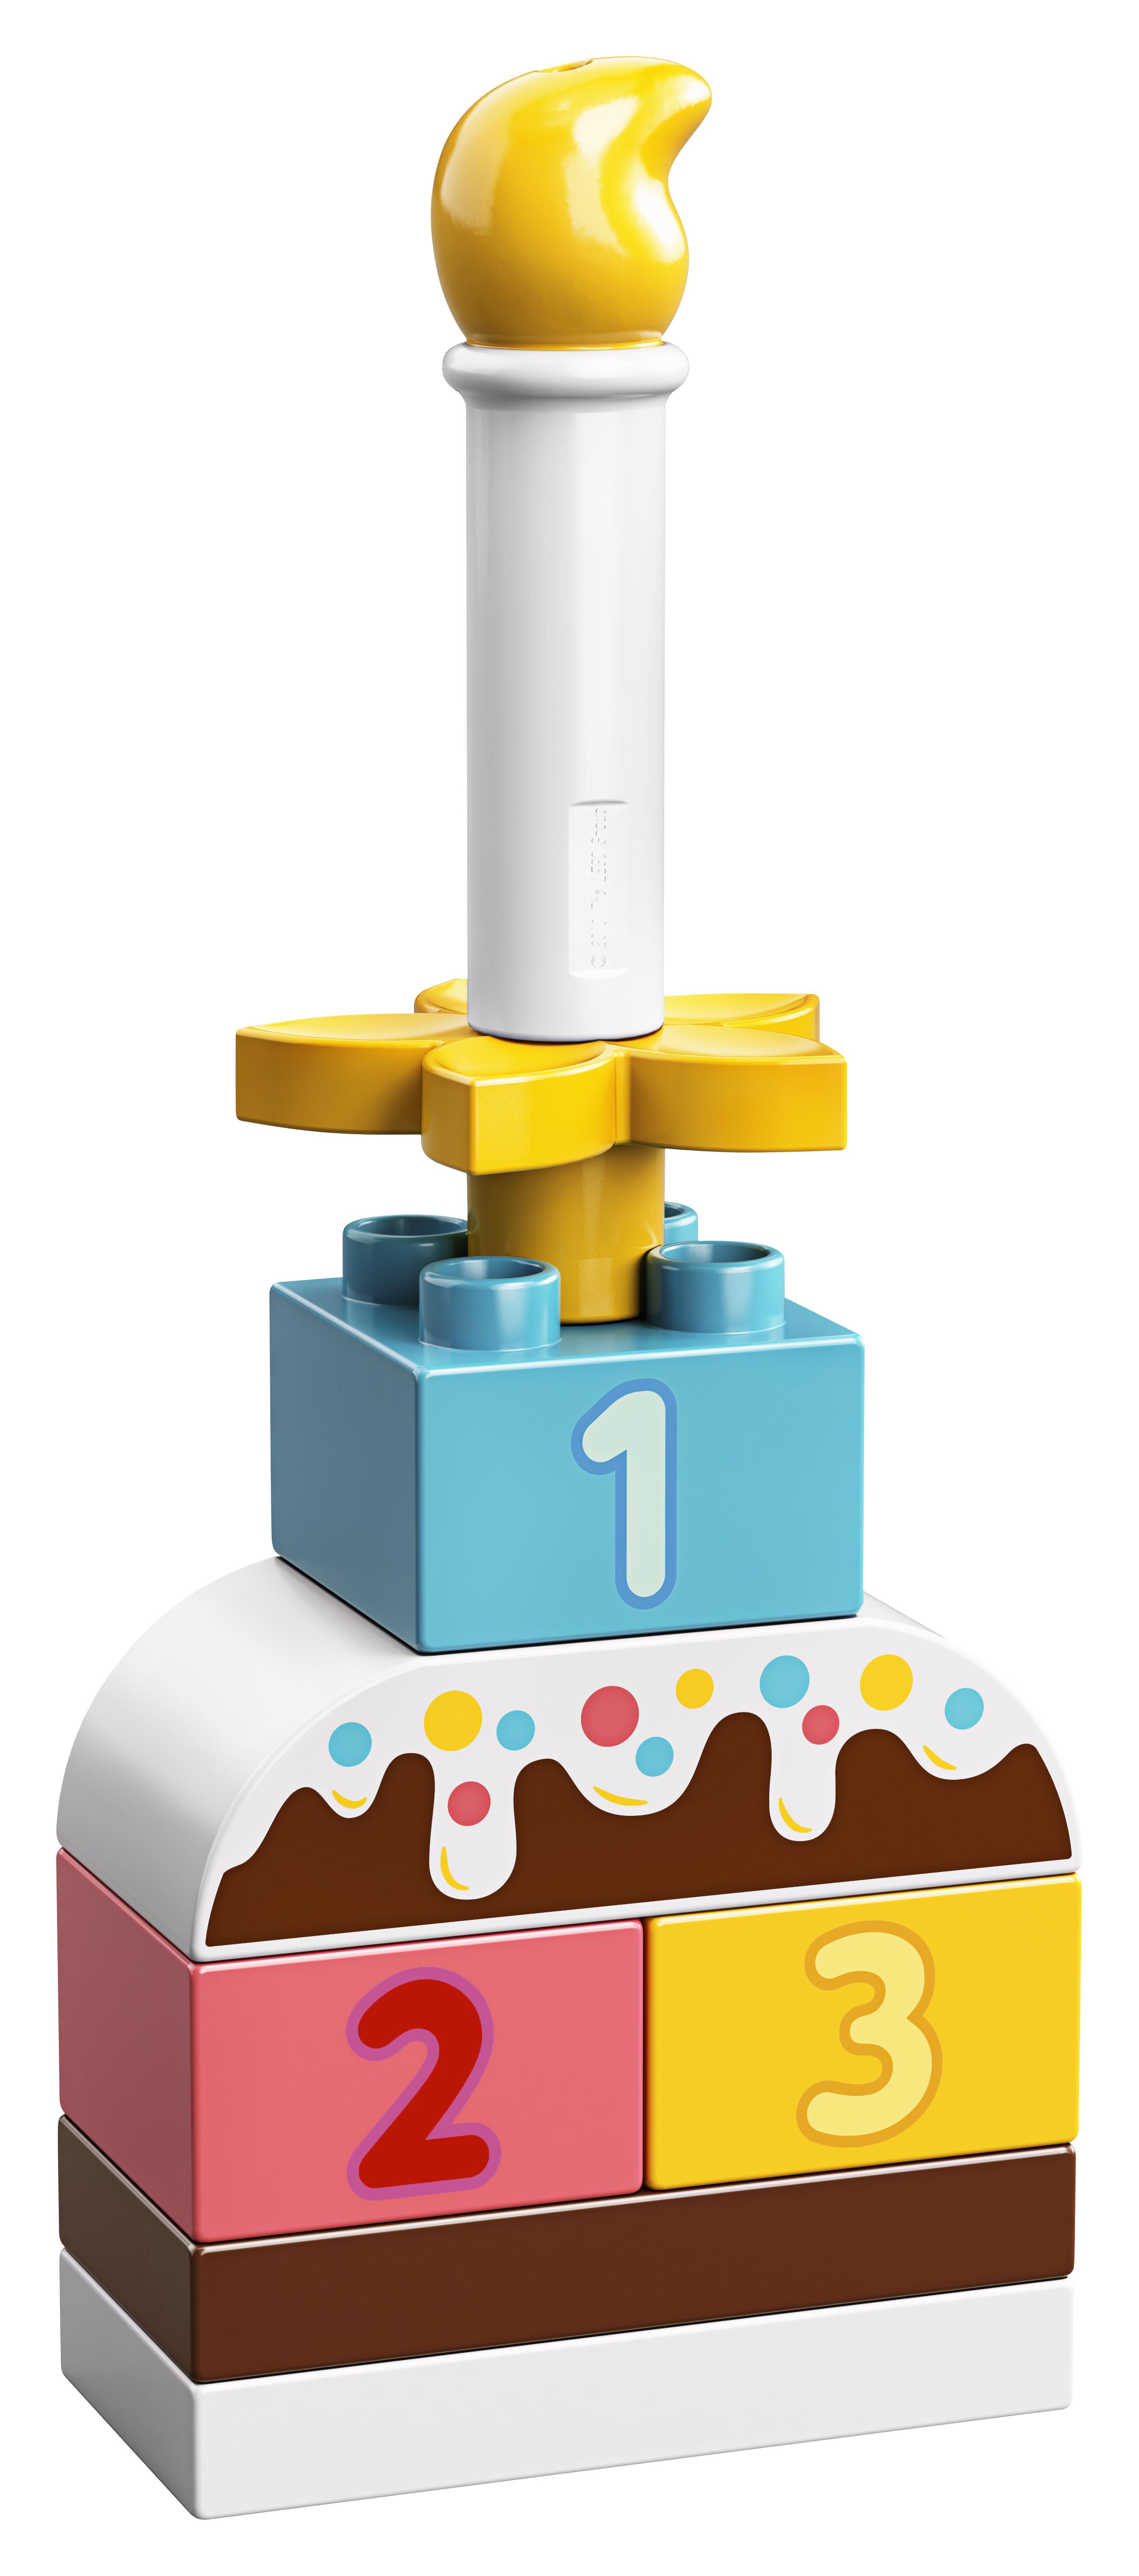 LEGO Duplo Birthday Cake | BrickEconomy